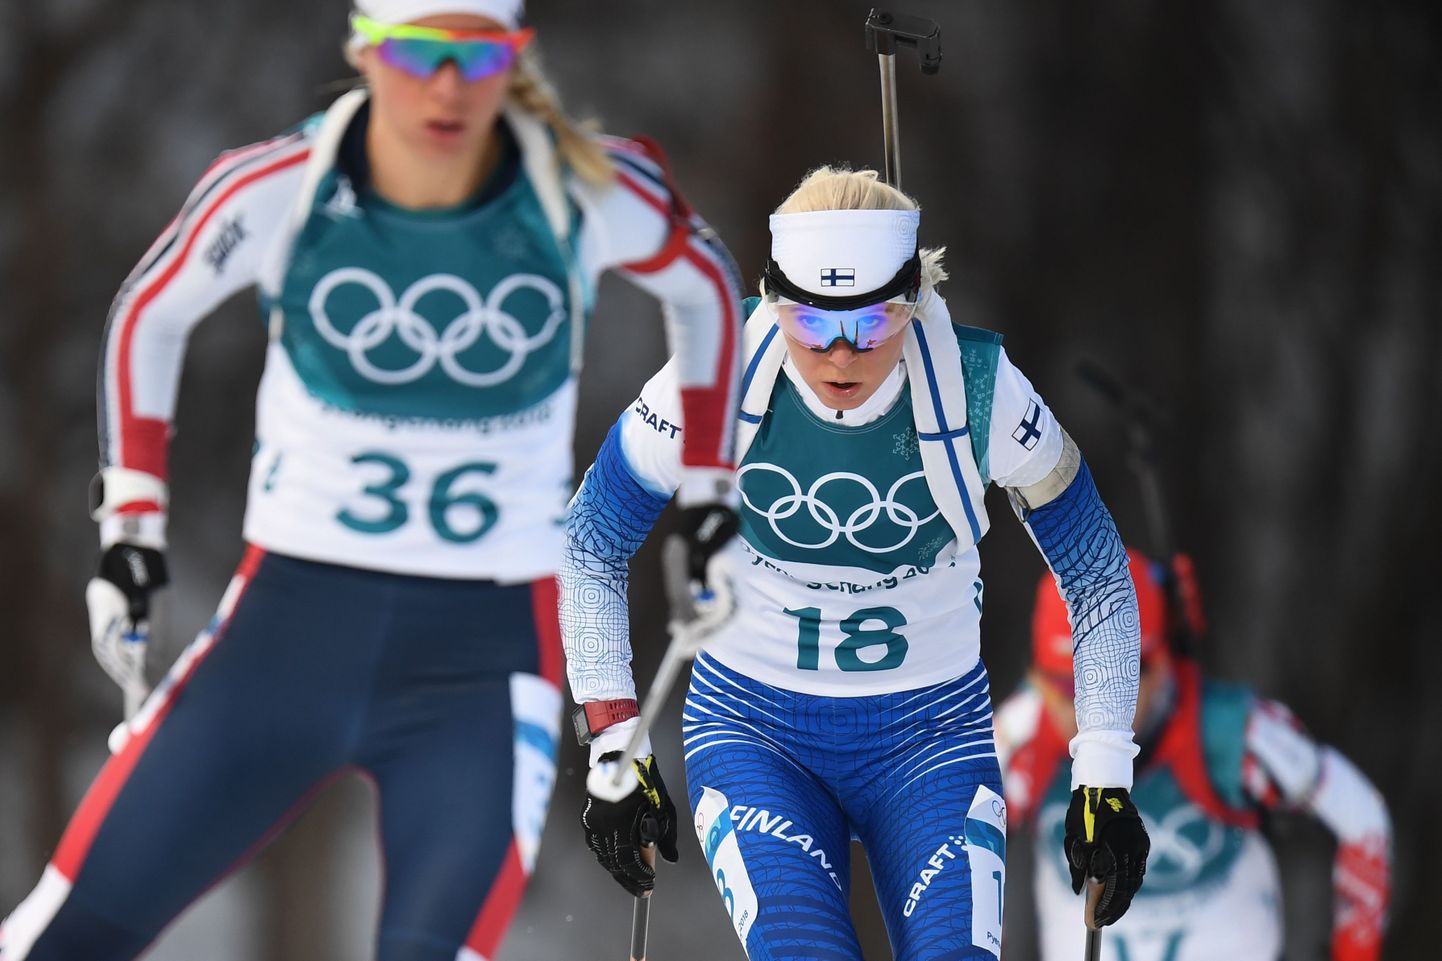 Kas Mari Laukkanen võidab oma karjääri esimese tiitlivõistluste medali kõrvalalal koos hea sõbranna Krista Pärmäkoskiga?